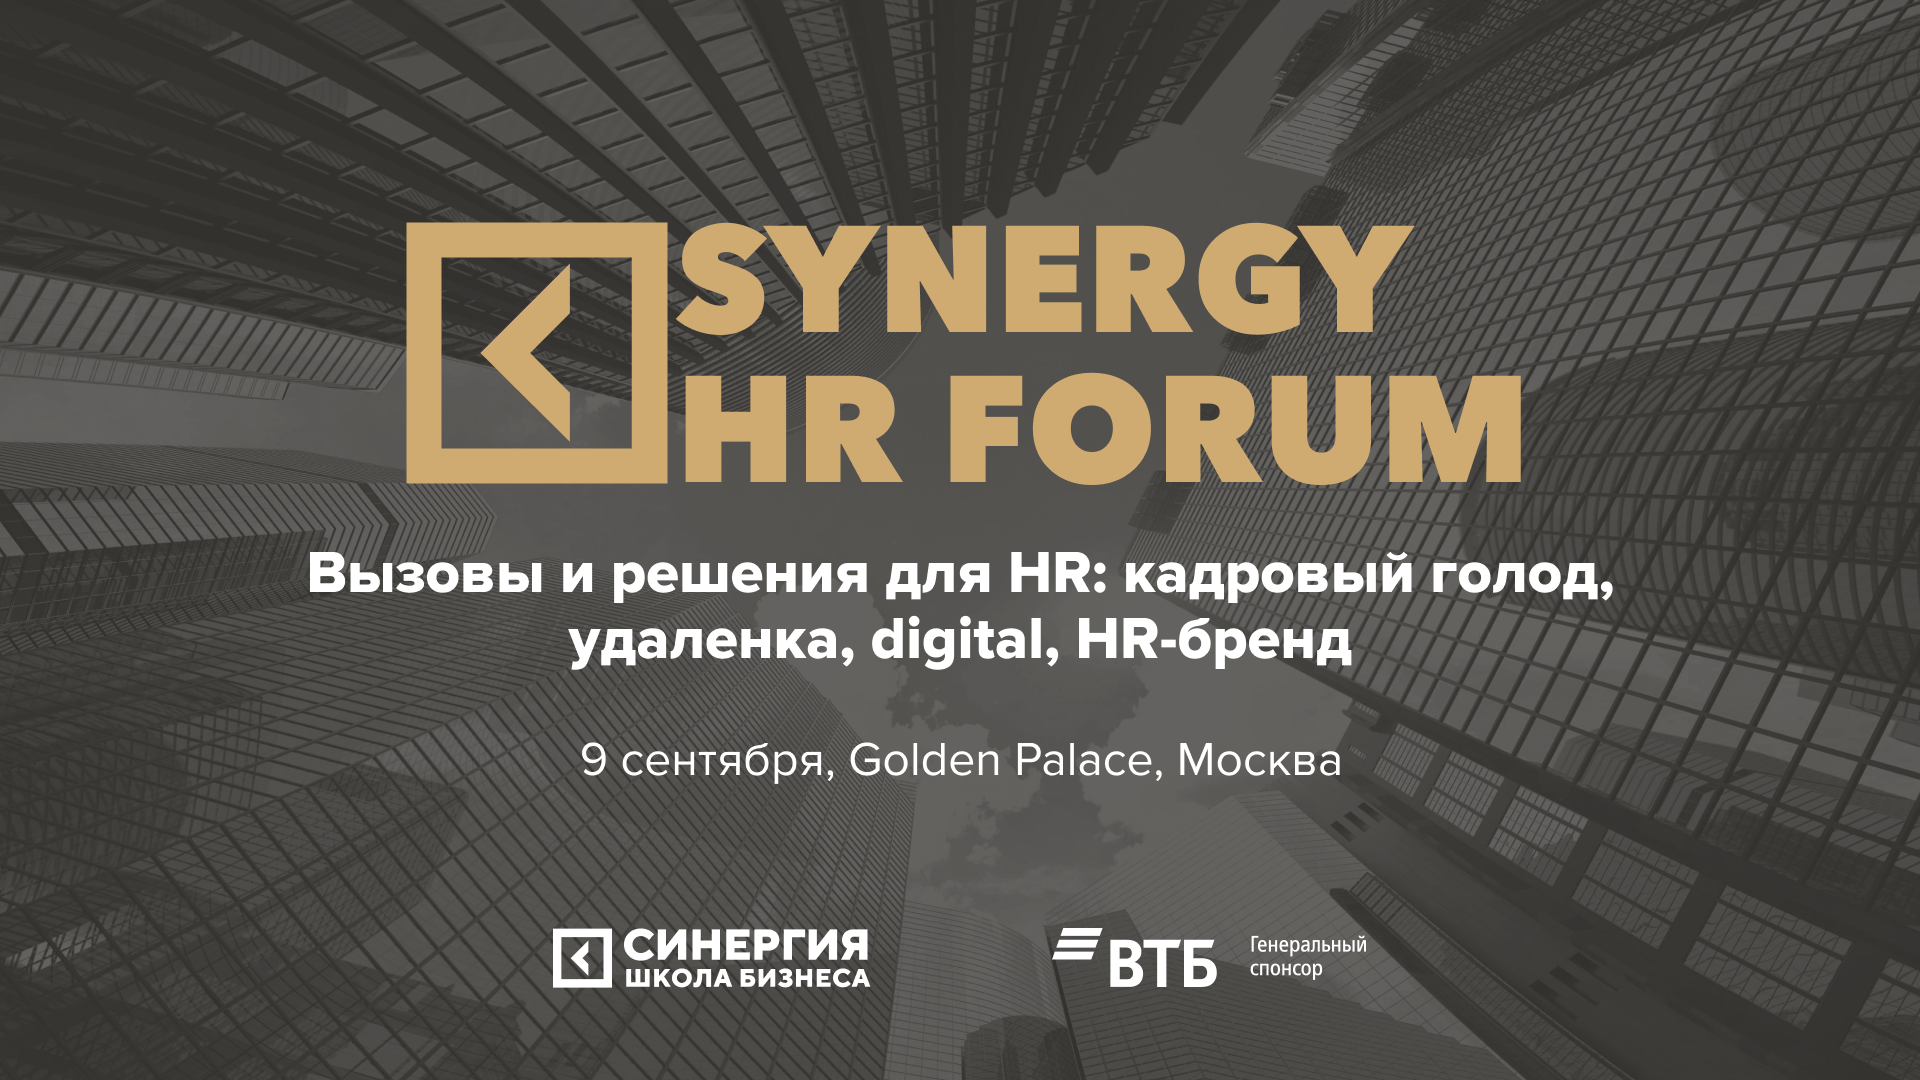 На Synergy HR Forum расскажут, как эффективно работать с человеческим капиталом